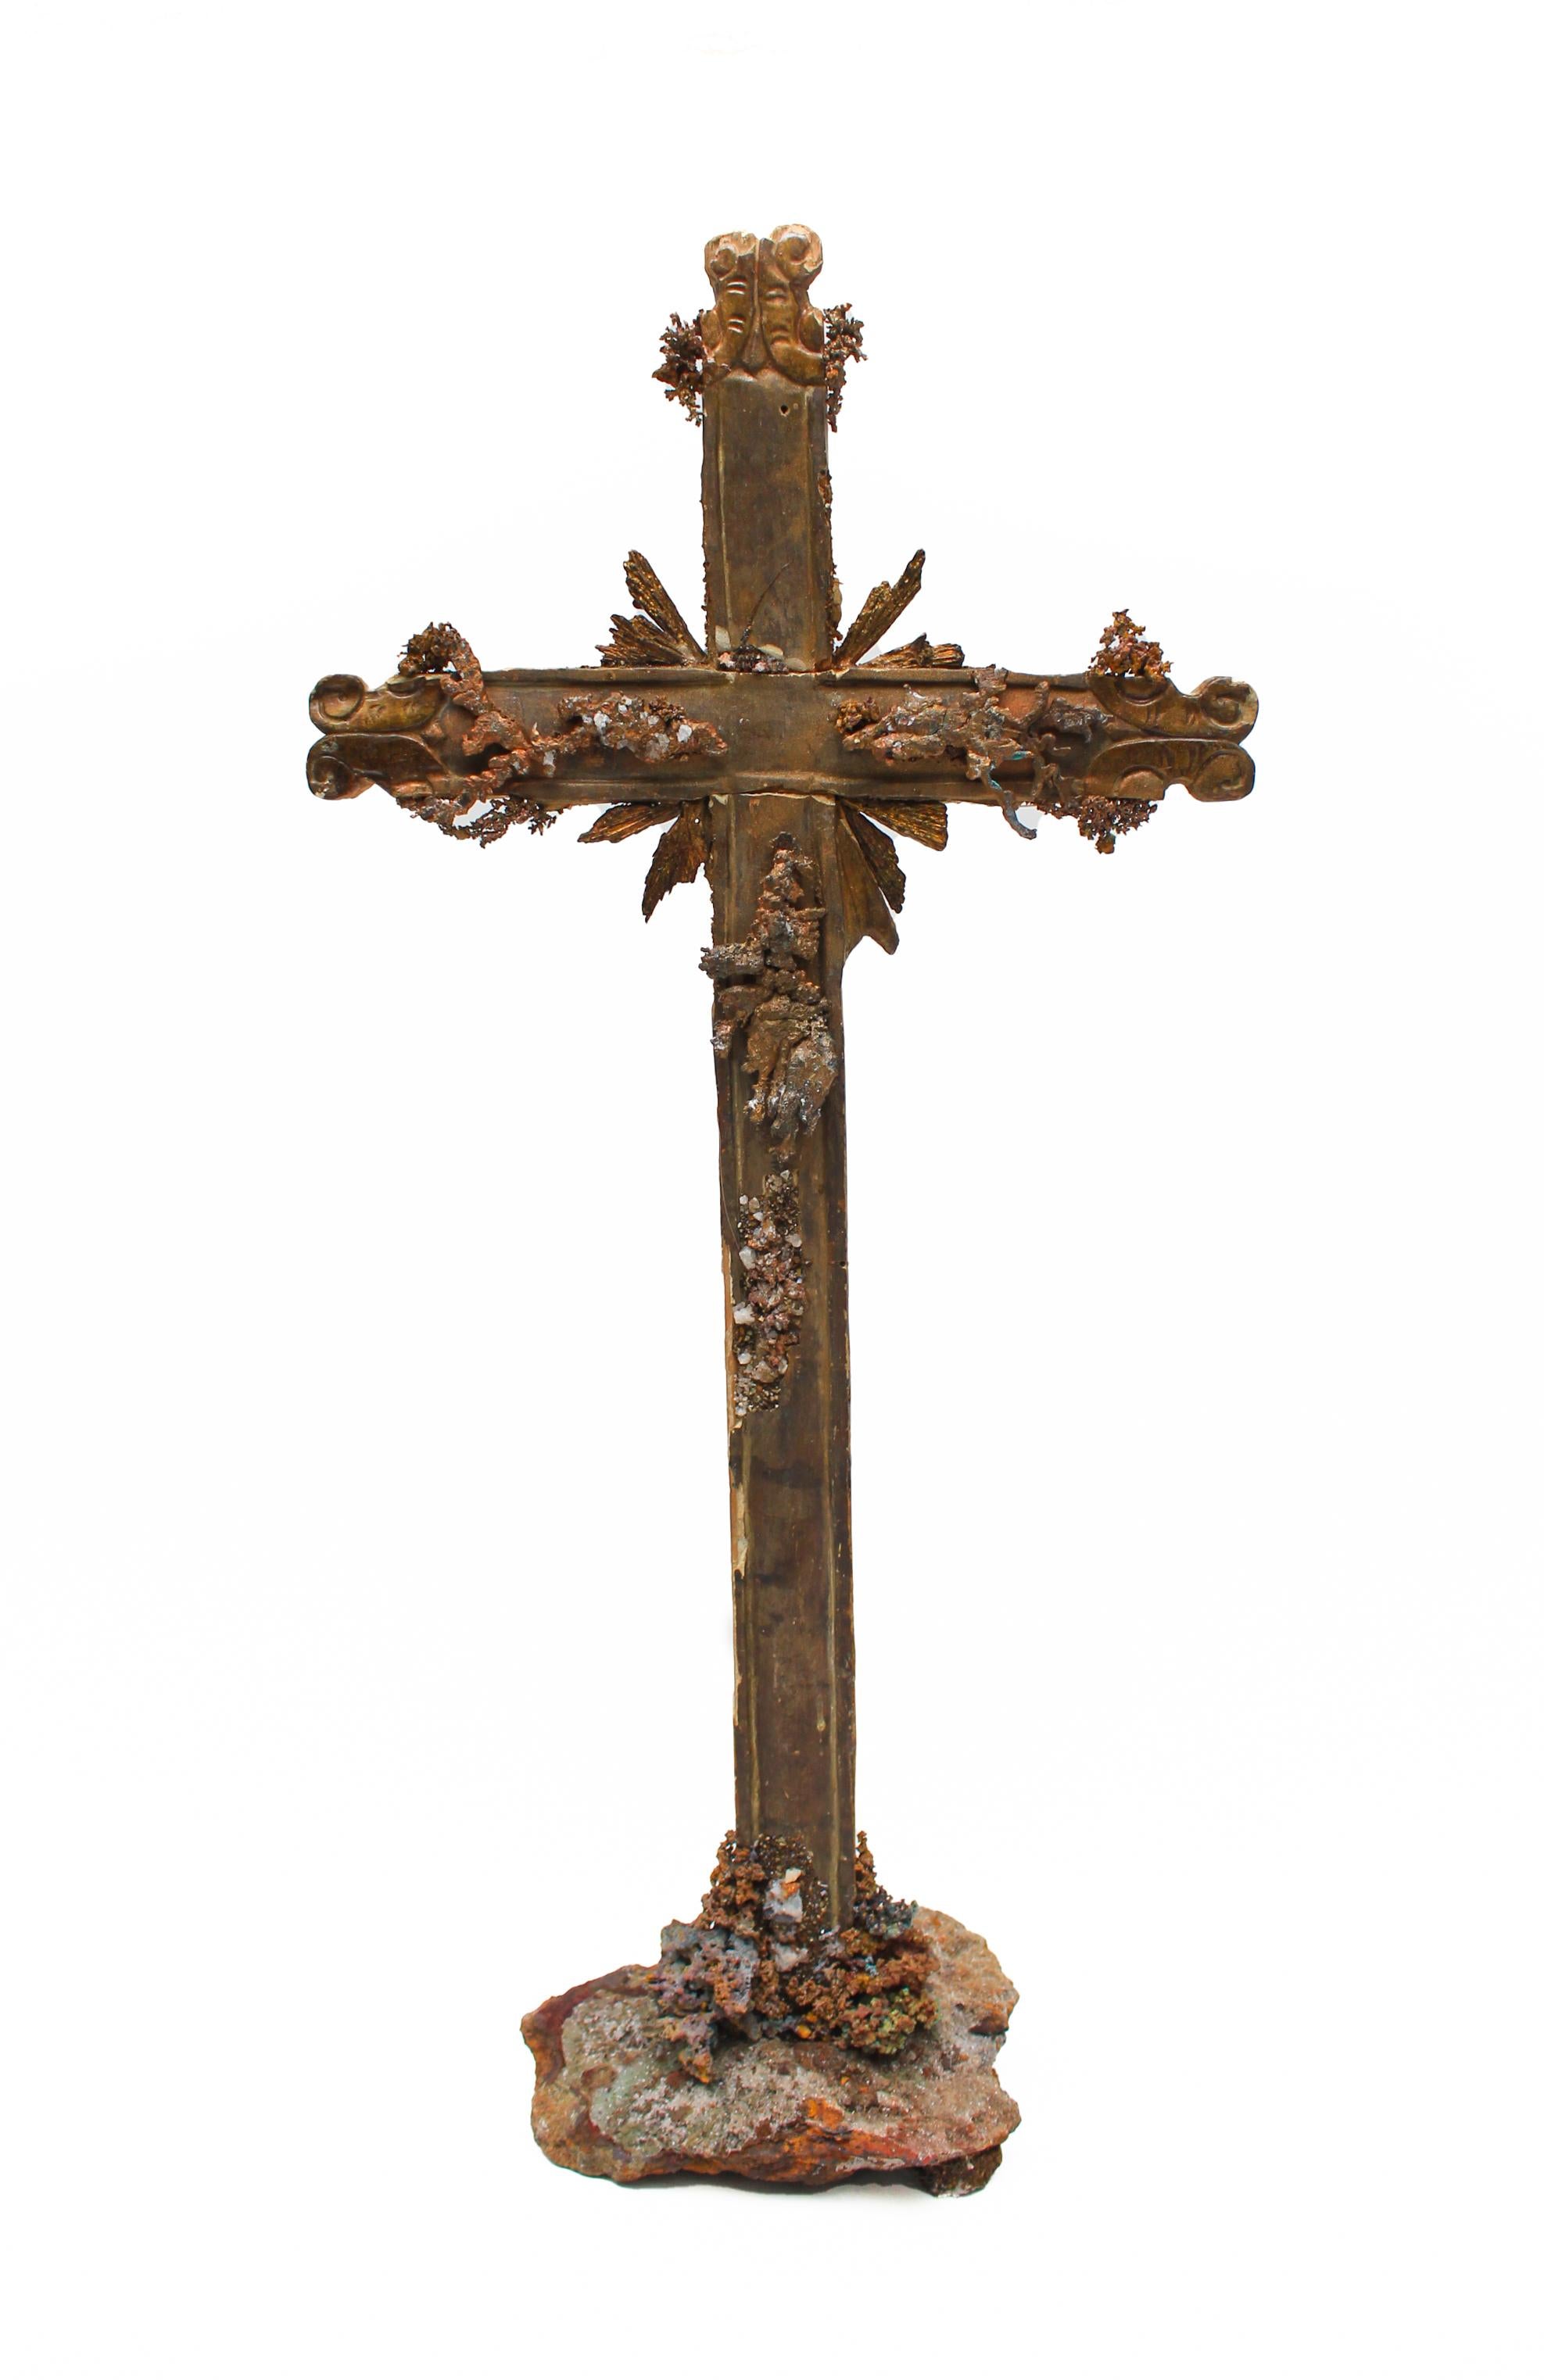 croix italienne du XVIIIe siècle ornée de cuivre natif avec des cristaux provenant de White Pine Mine, Michigan, et de disthène cuivrée sur une base de druzy cristalline dans une matrice de minerai de cuivre. Le crucifix provient à l'origine d'une